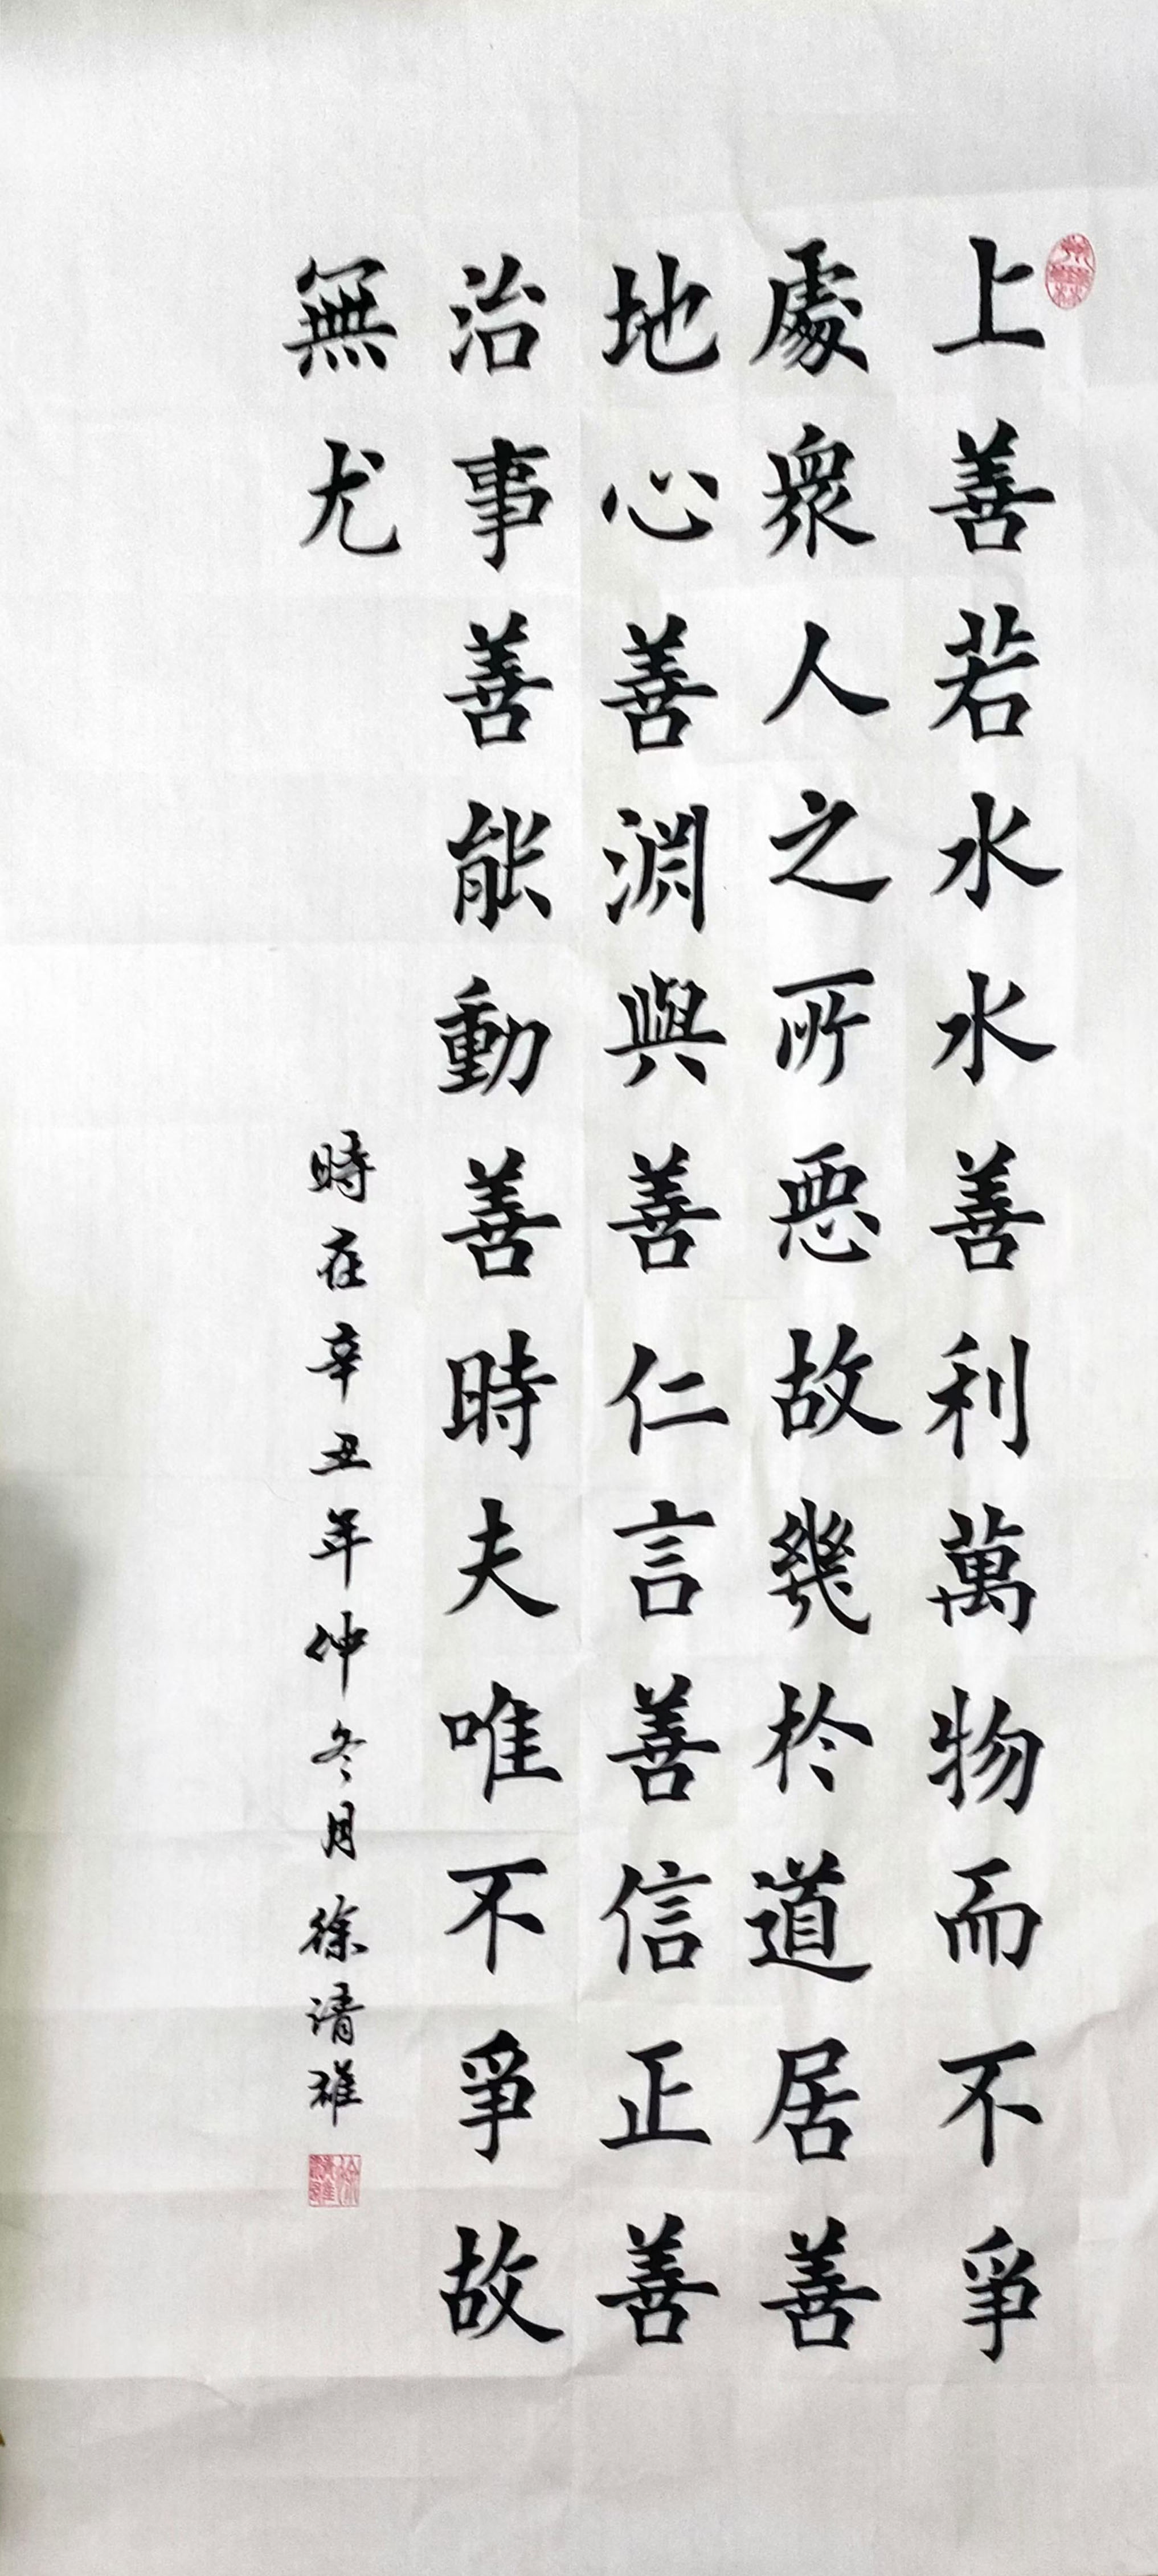 中国大众文化学会名人书画艺术发展委员会——徐清雄